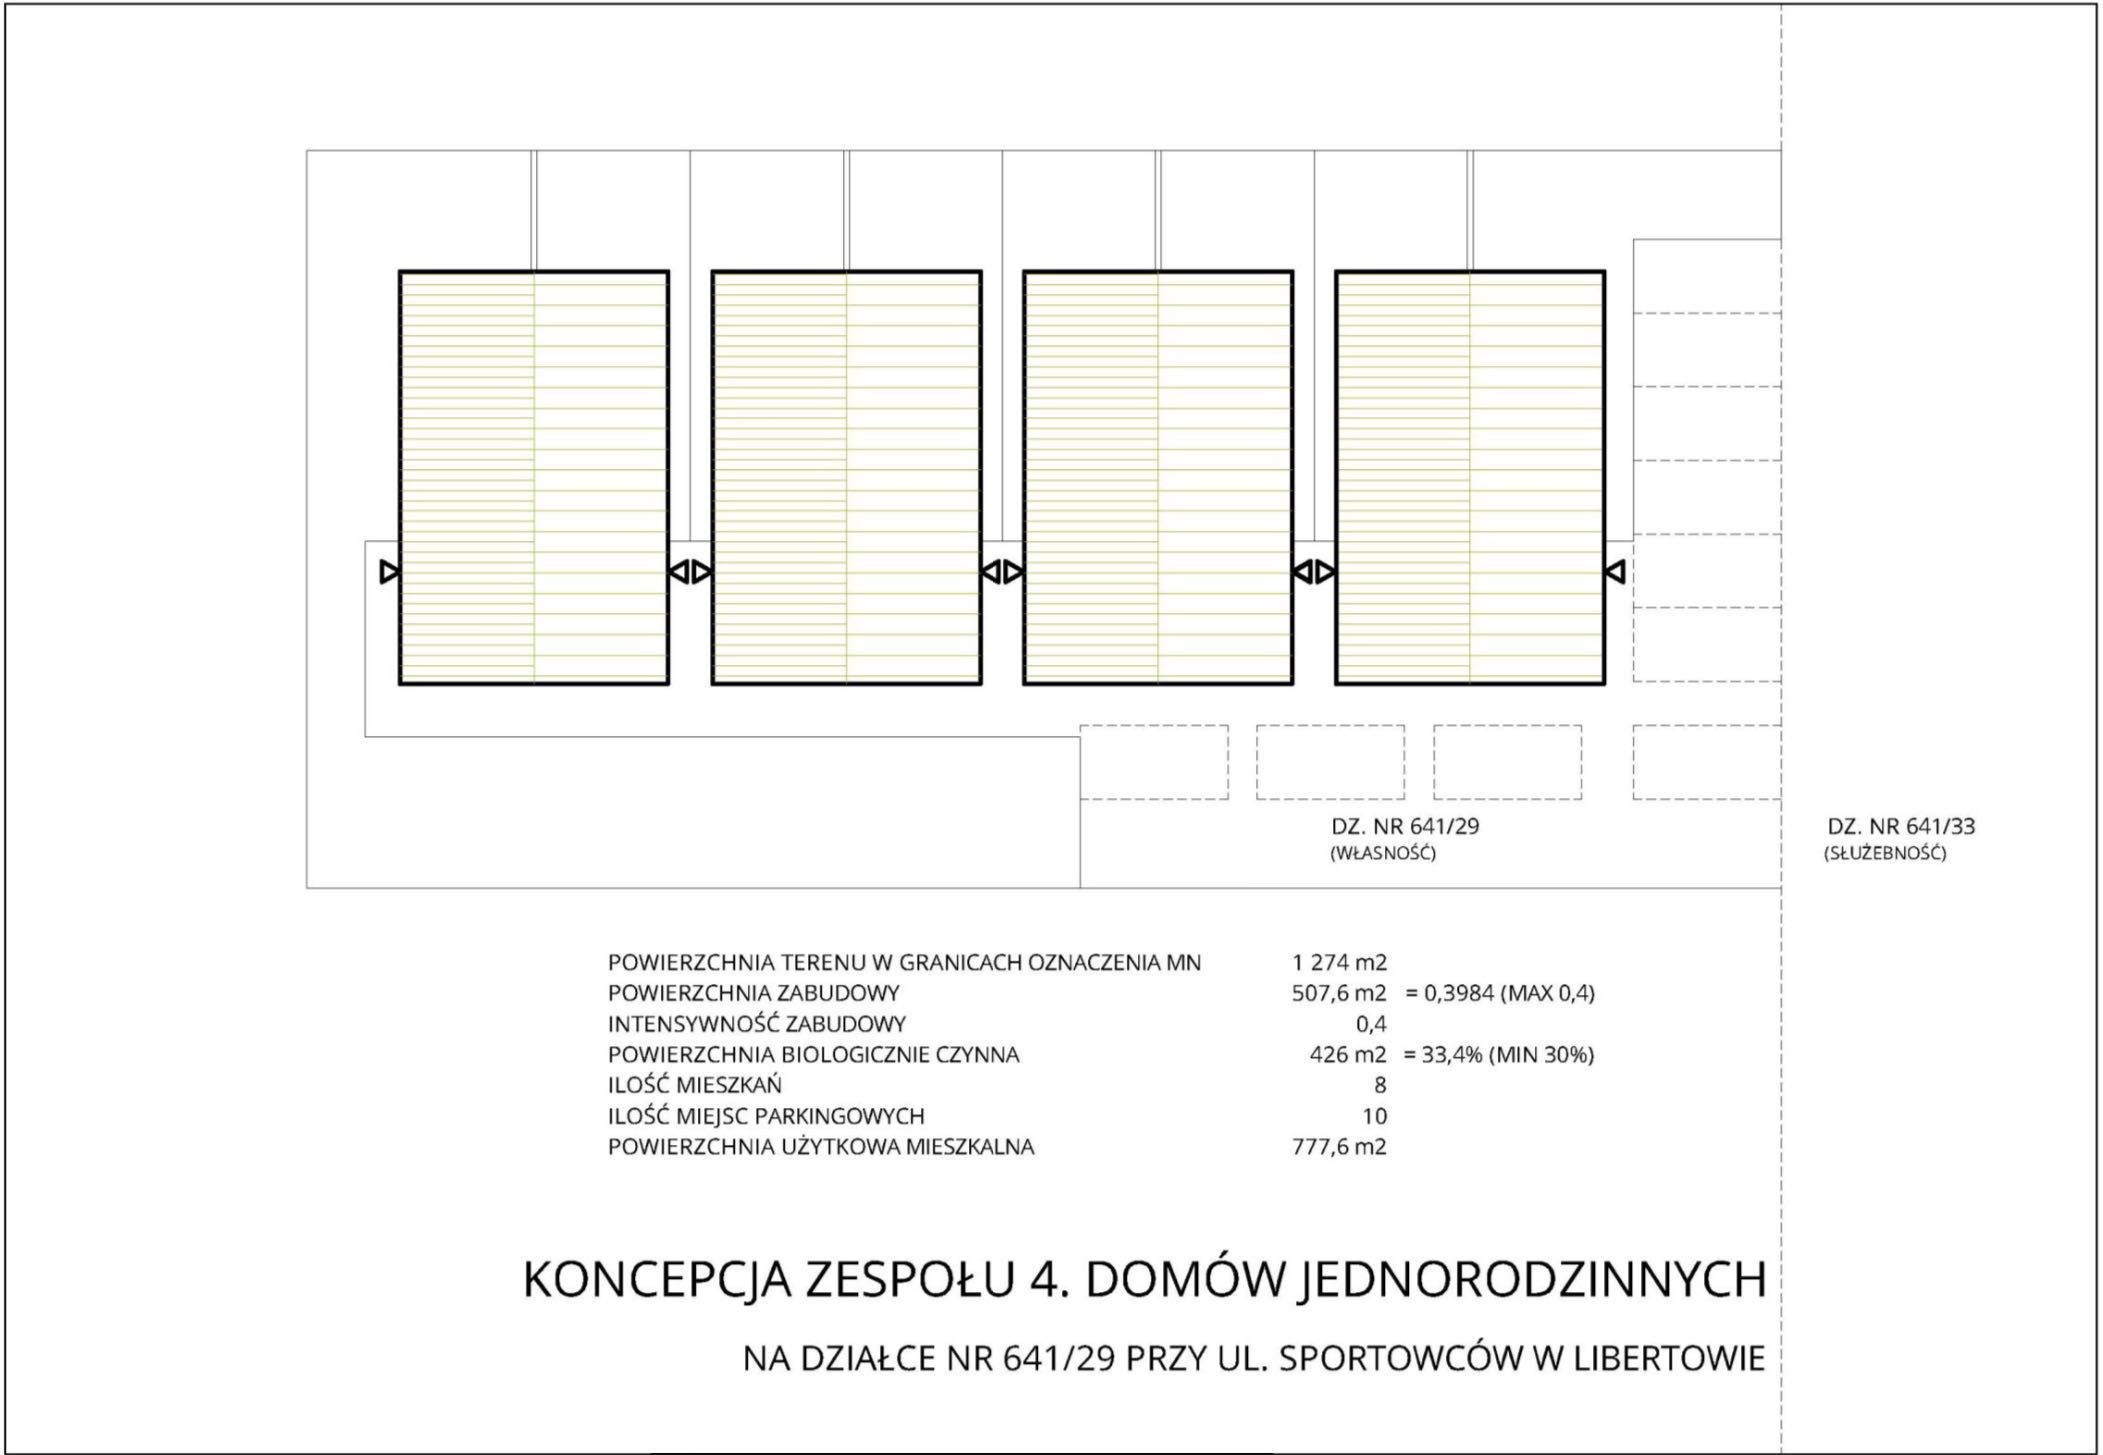 Działka budowlana tuż koło Krakowa - okazja dla dewelopera, 777 m2 PUM